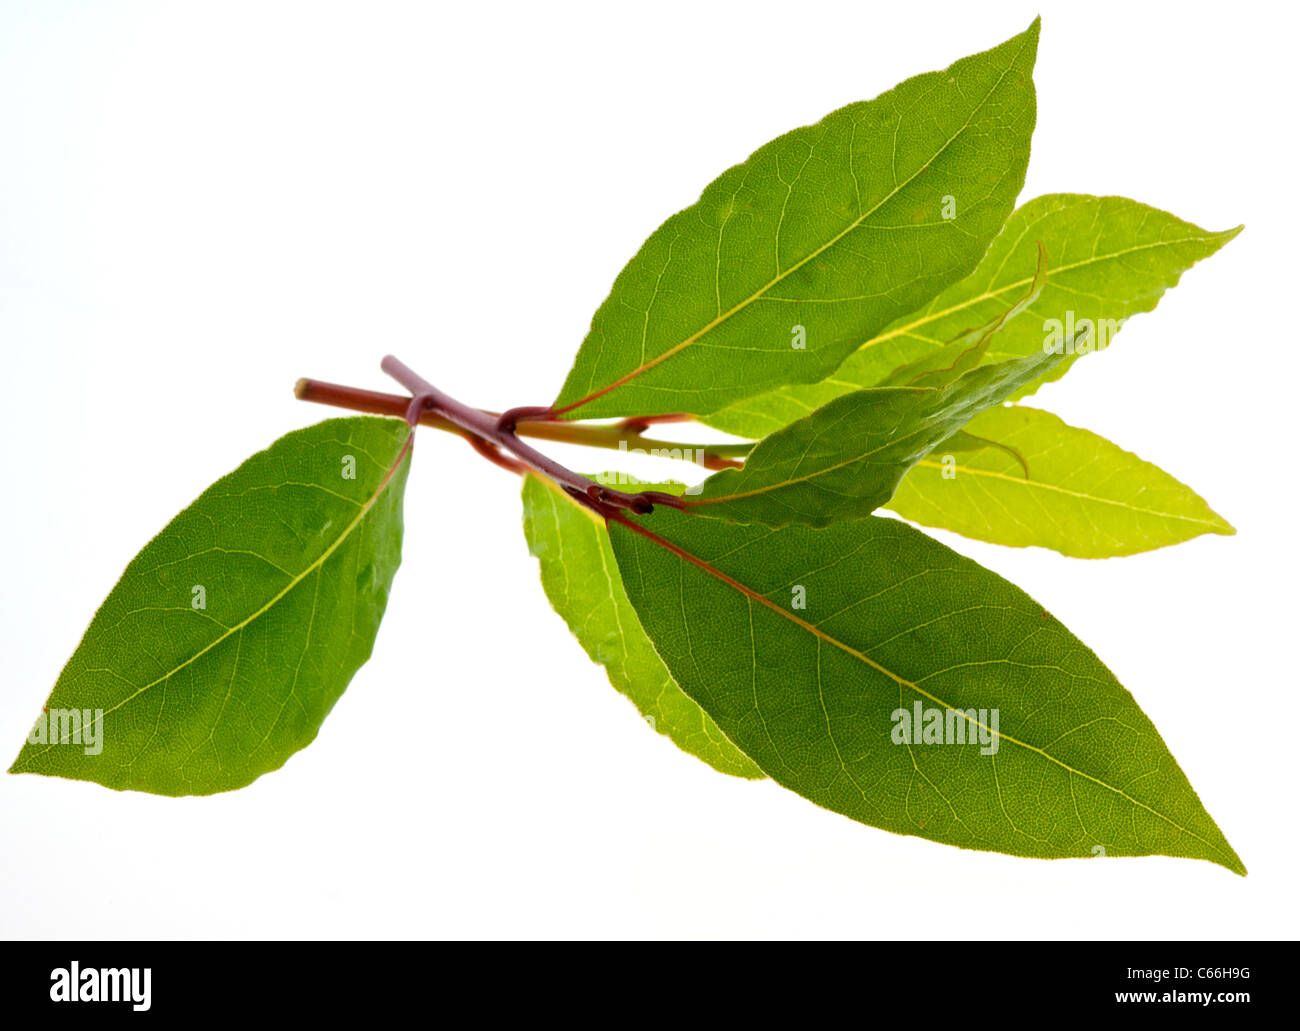 Herbes culinaires HERB SWEET BAY (Laurus nobilis) les feuilles de laurier sont largement utilisées dans la cuisine Banque D'Images